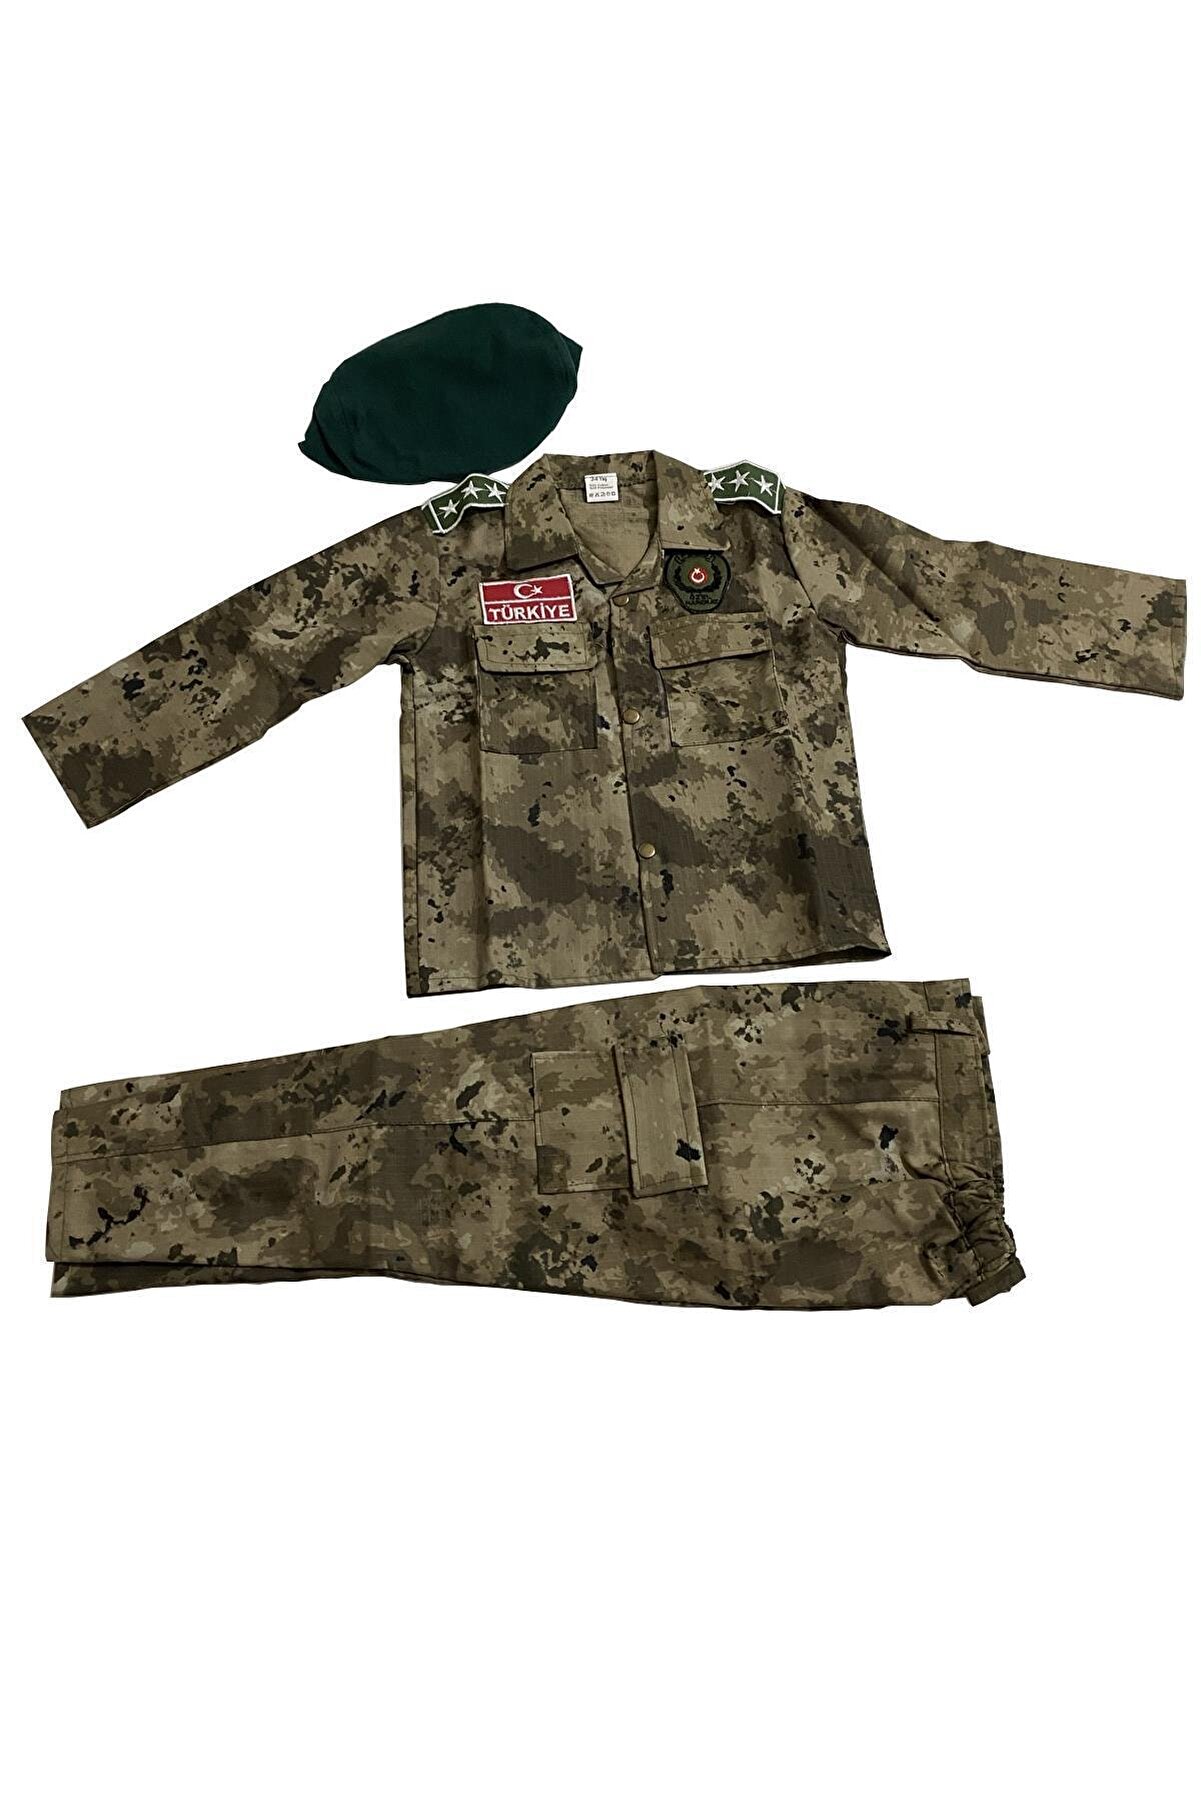 DEHAMODA Çocuk Polis Özel Harekat Kıyafeti Asker Kostümü